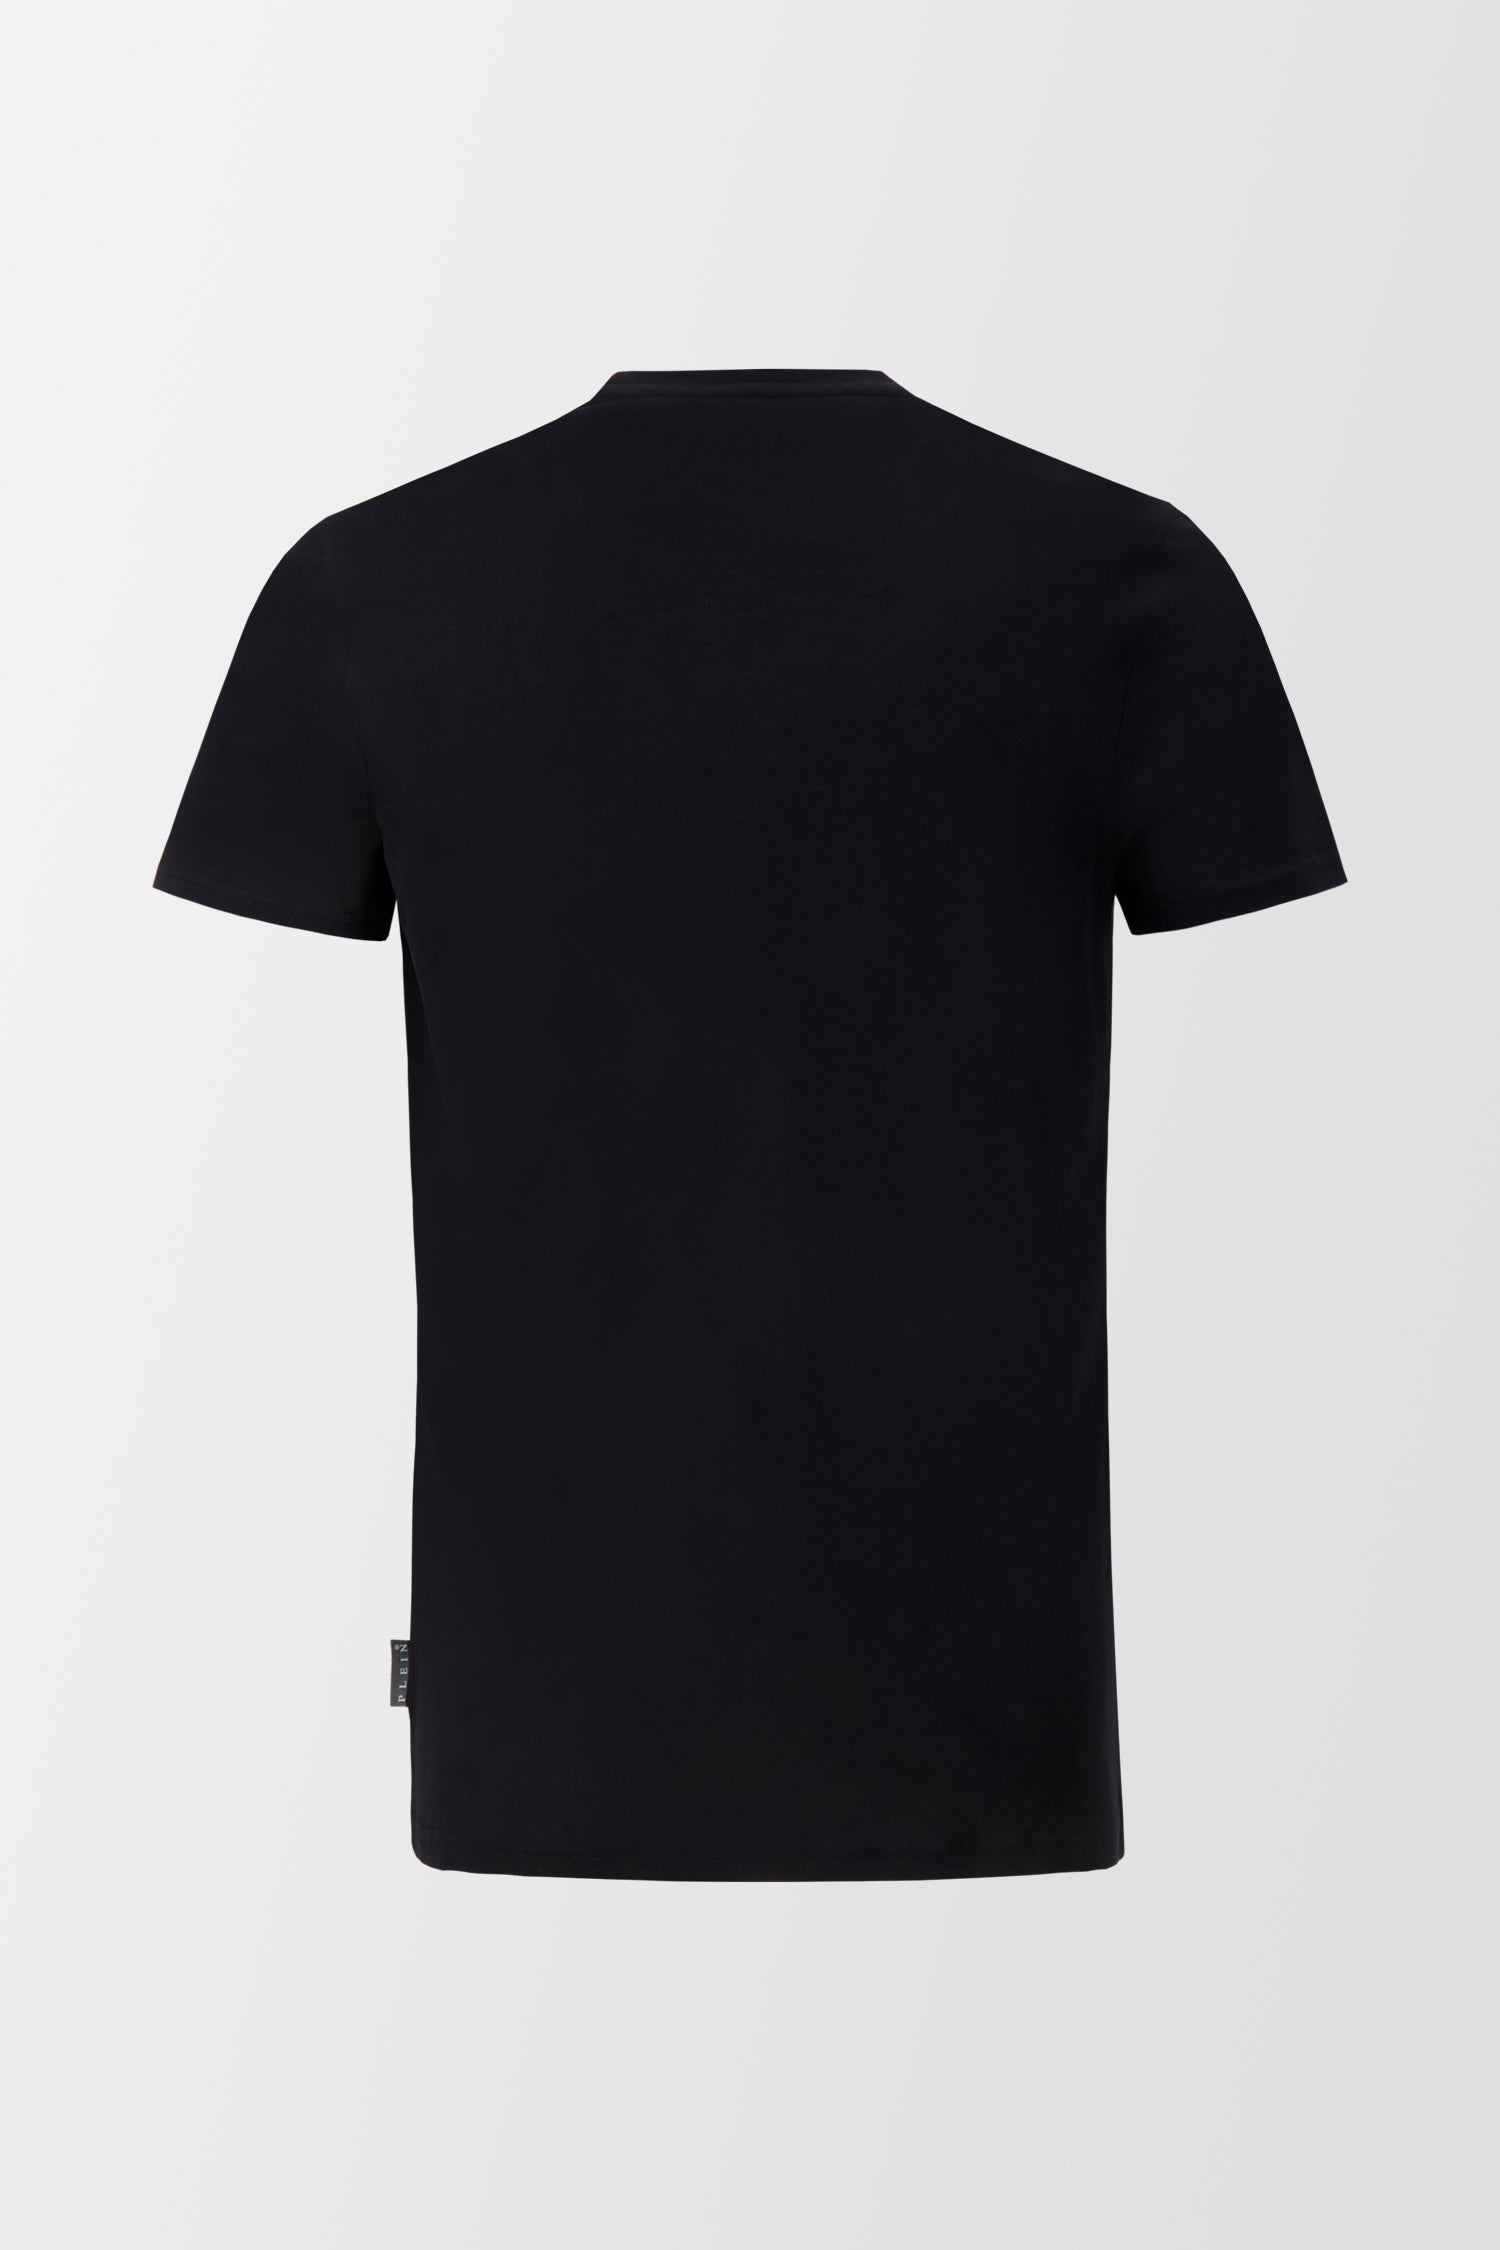 Philipp Plein Black Round Neck SS Istitutional T-Shirt